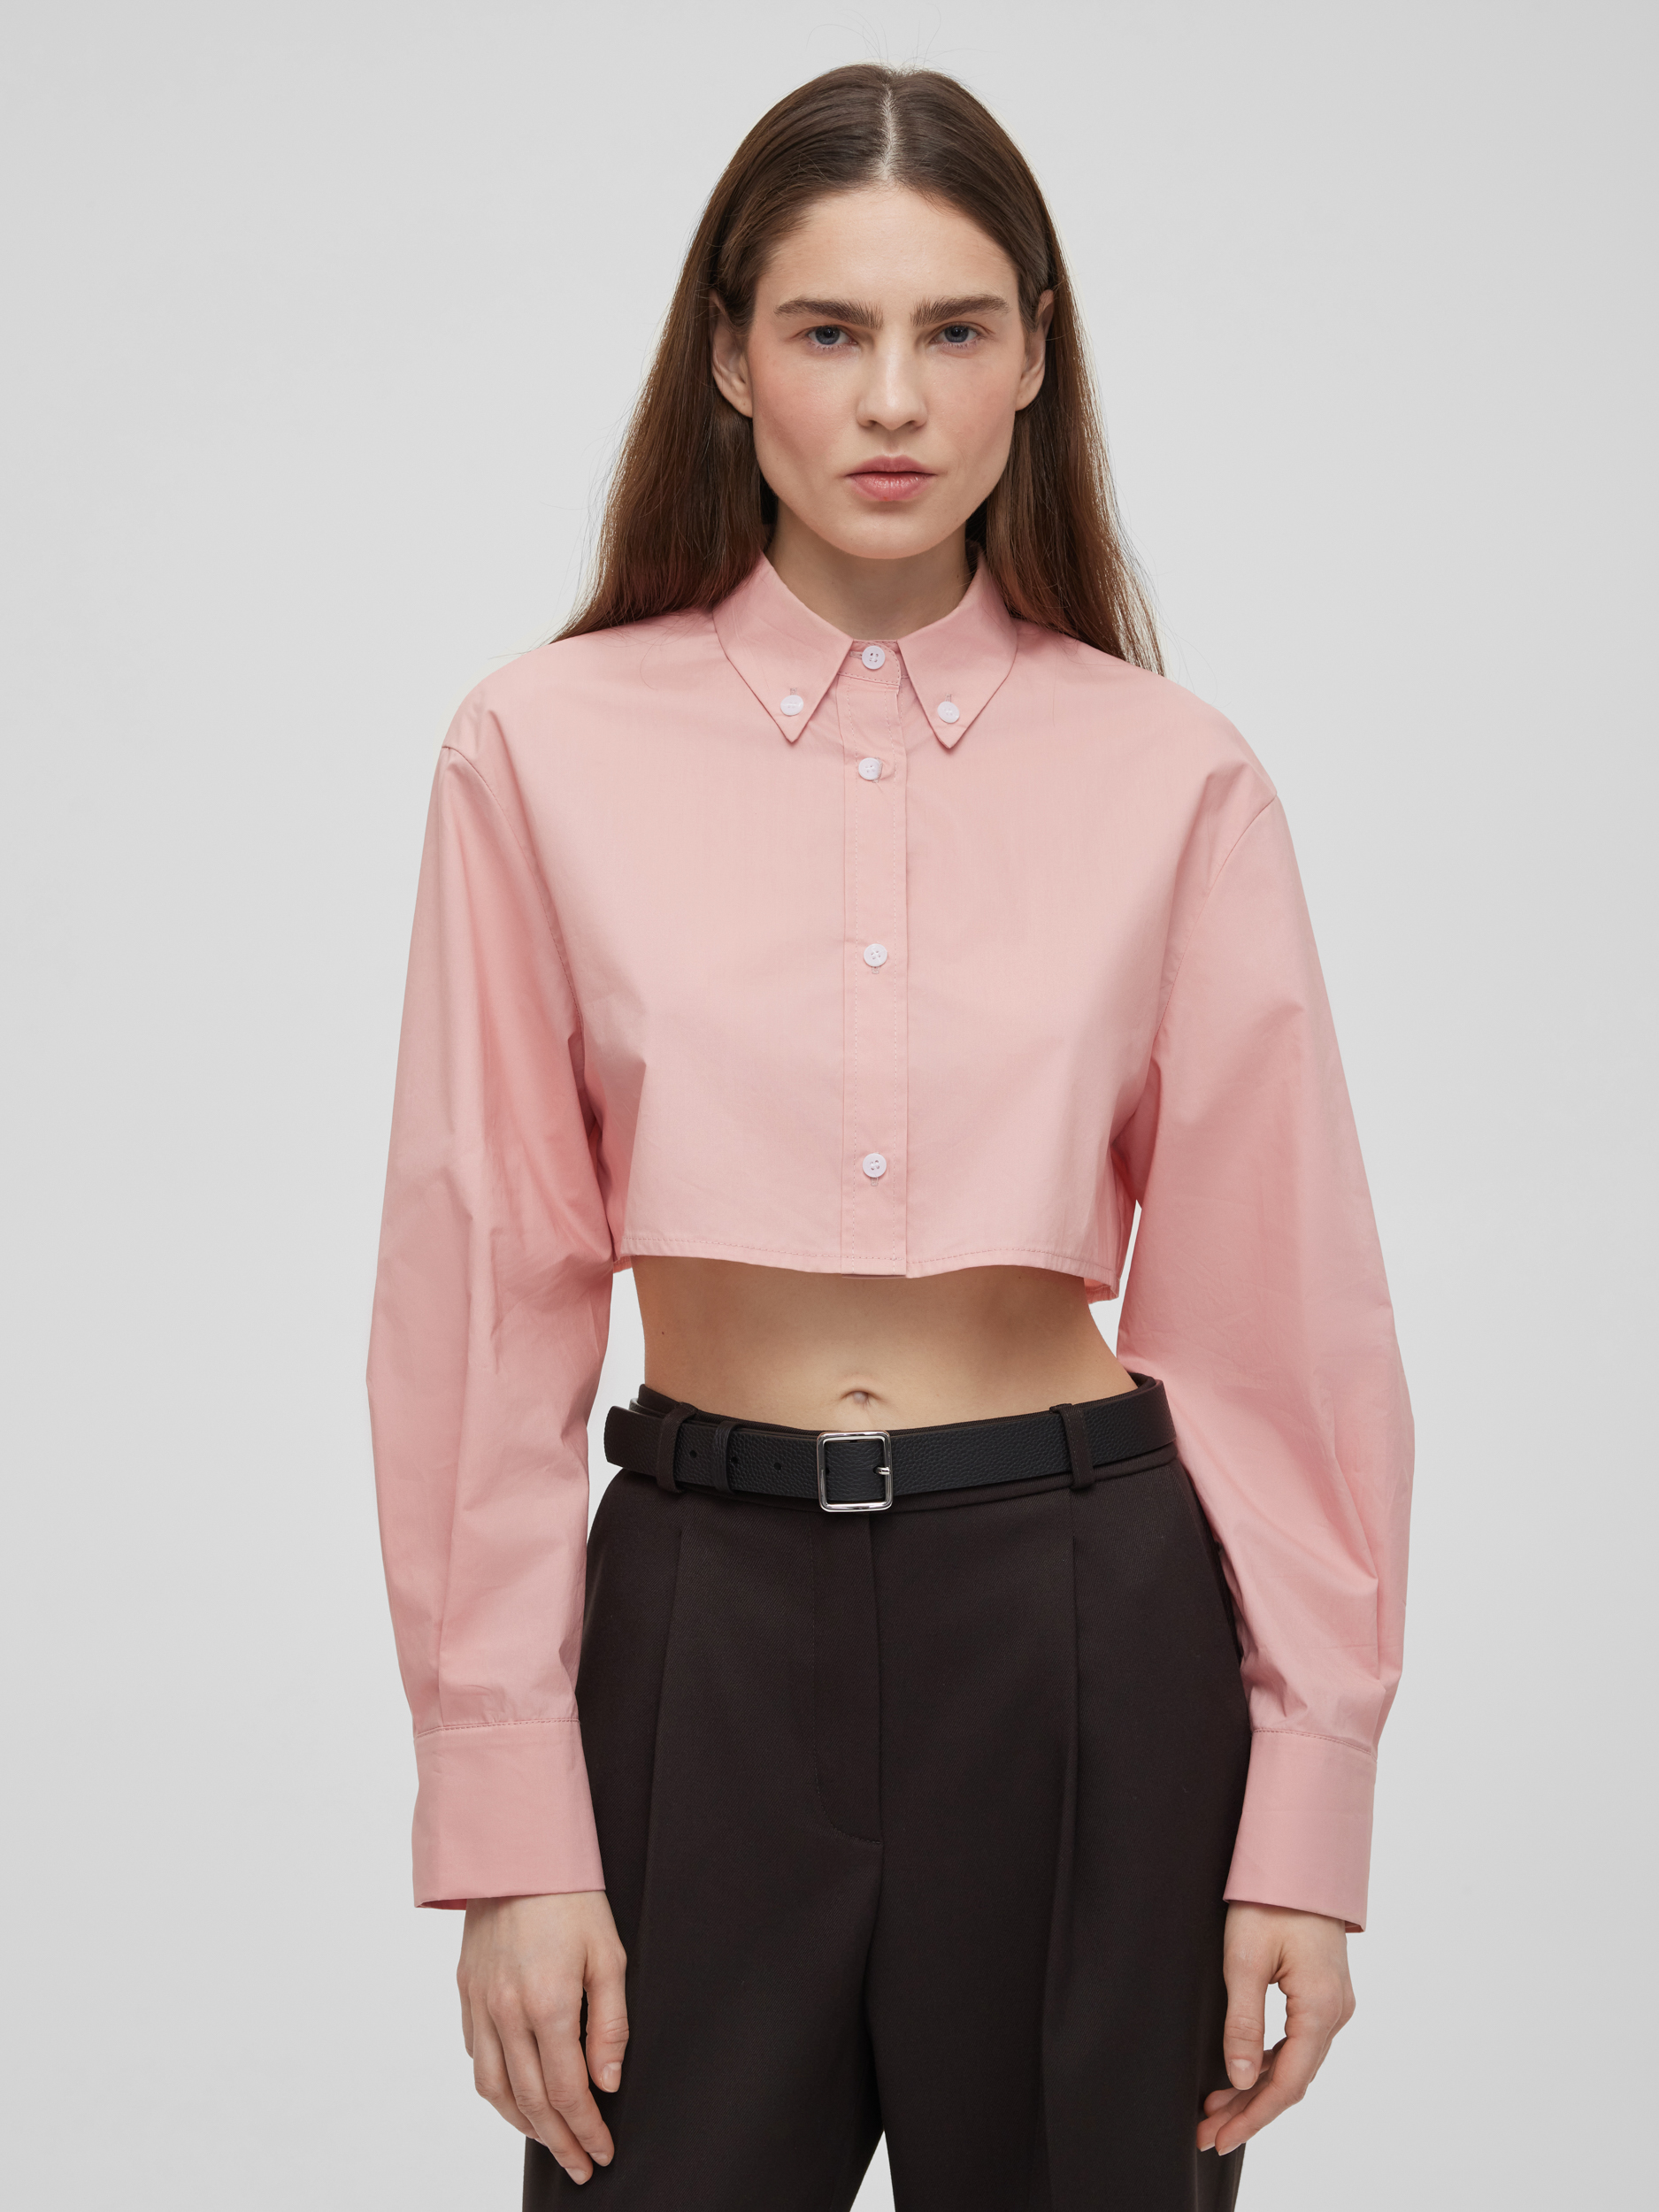 Рубашка женская короткая из хлопка, цвет – розовый рубашка женская короткая из хлопка цвет – черный